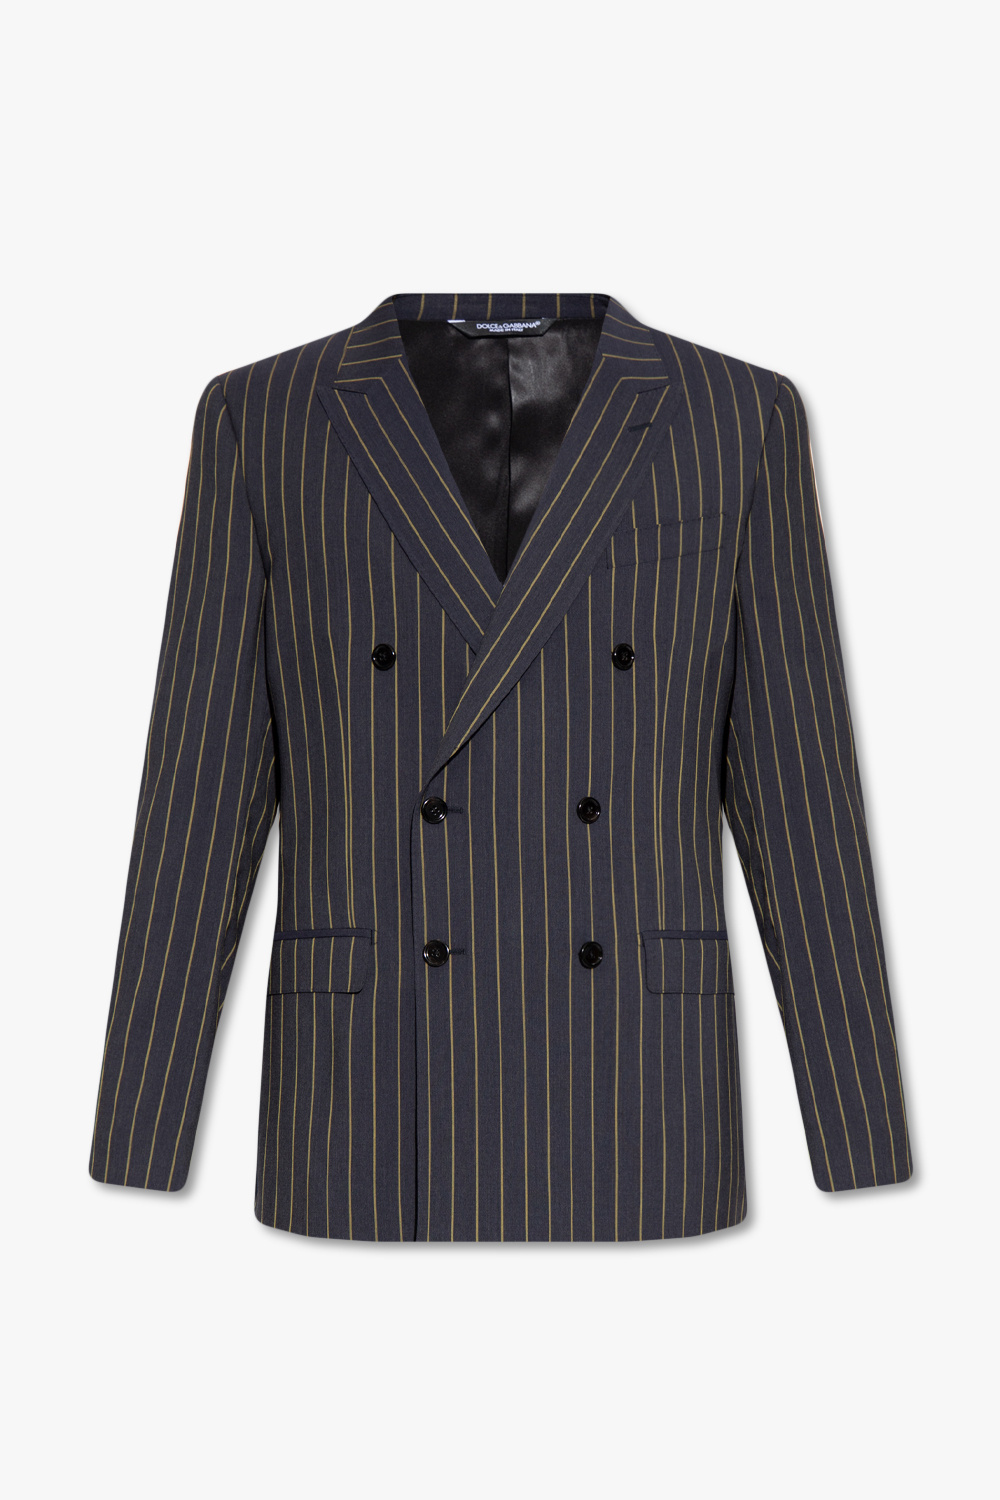 Dolce & Gabbana Striped blazer